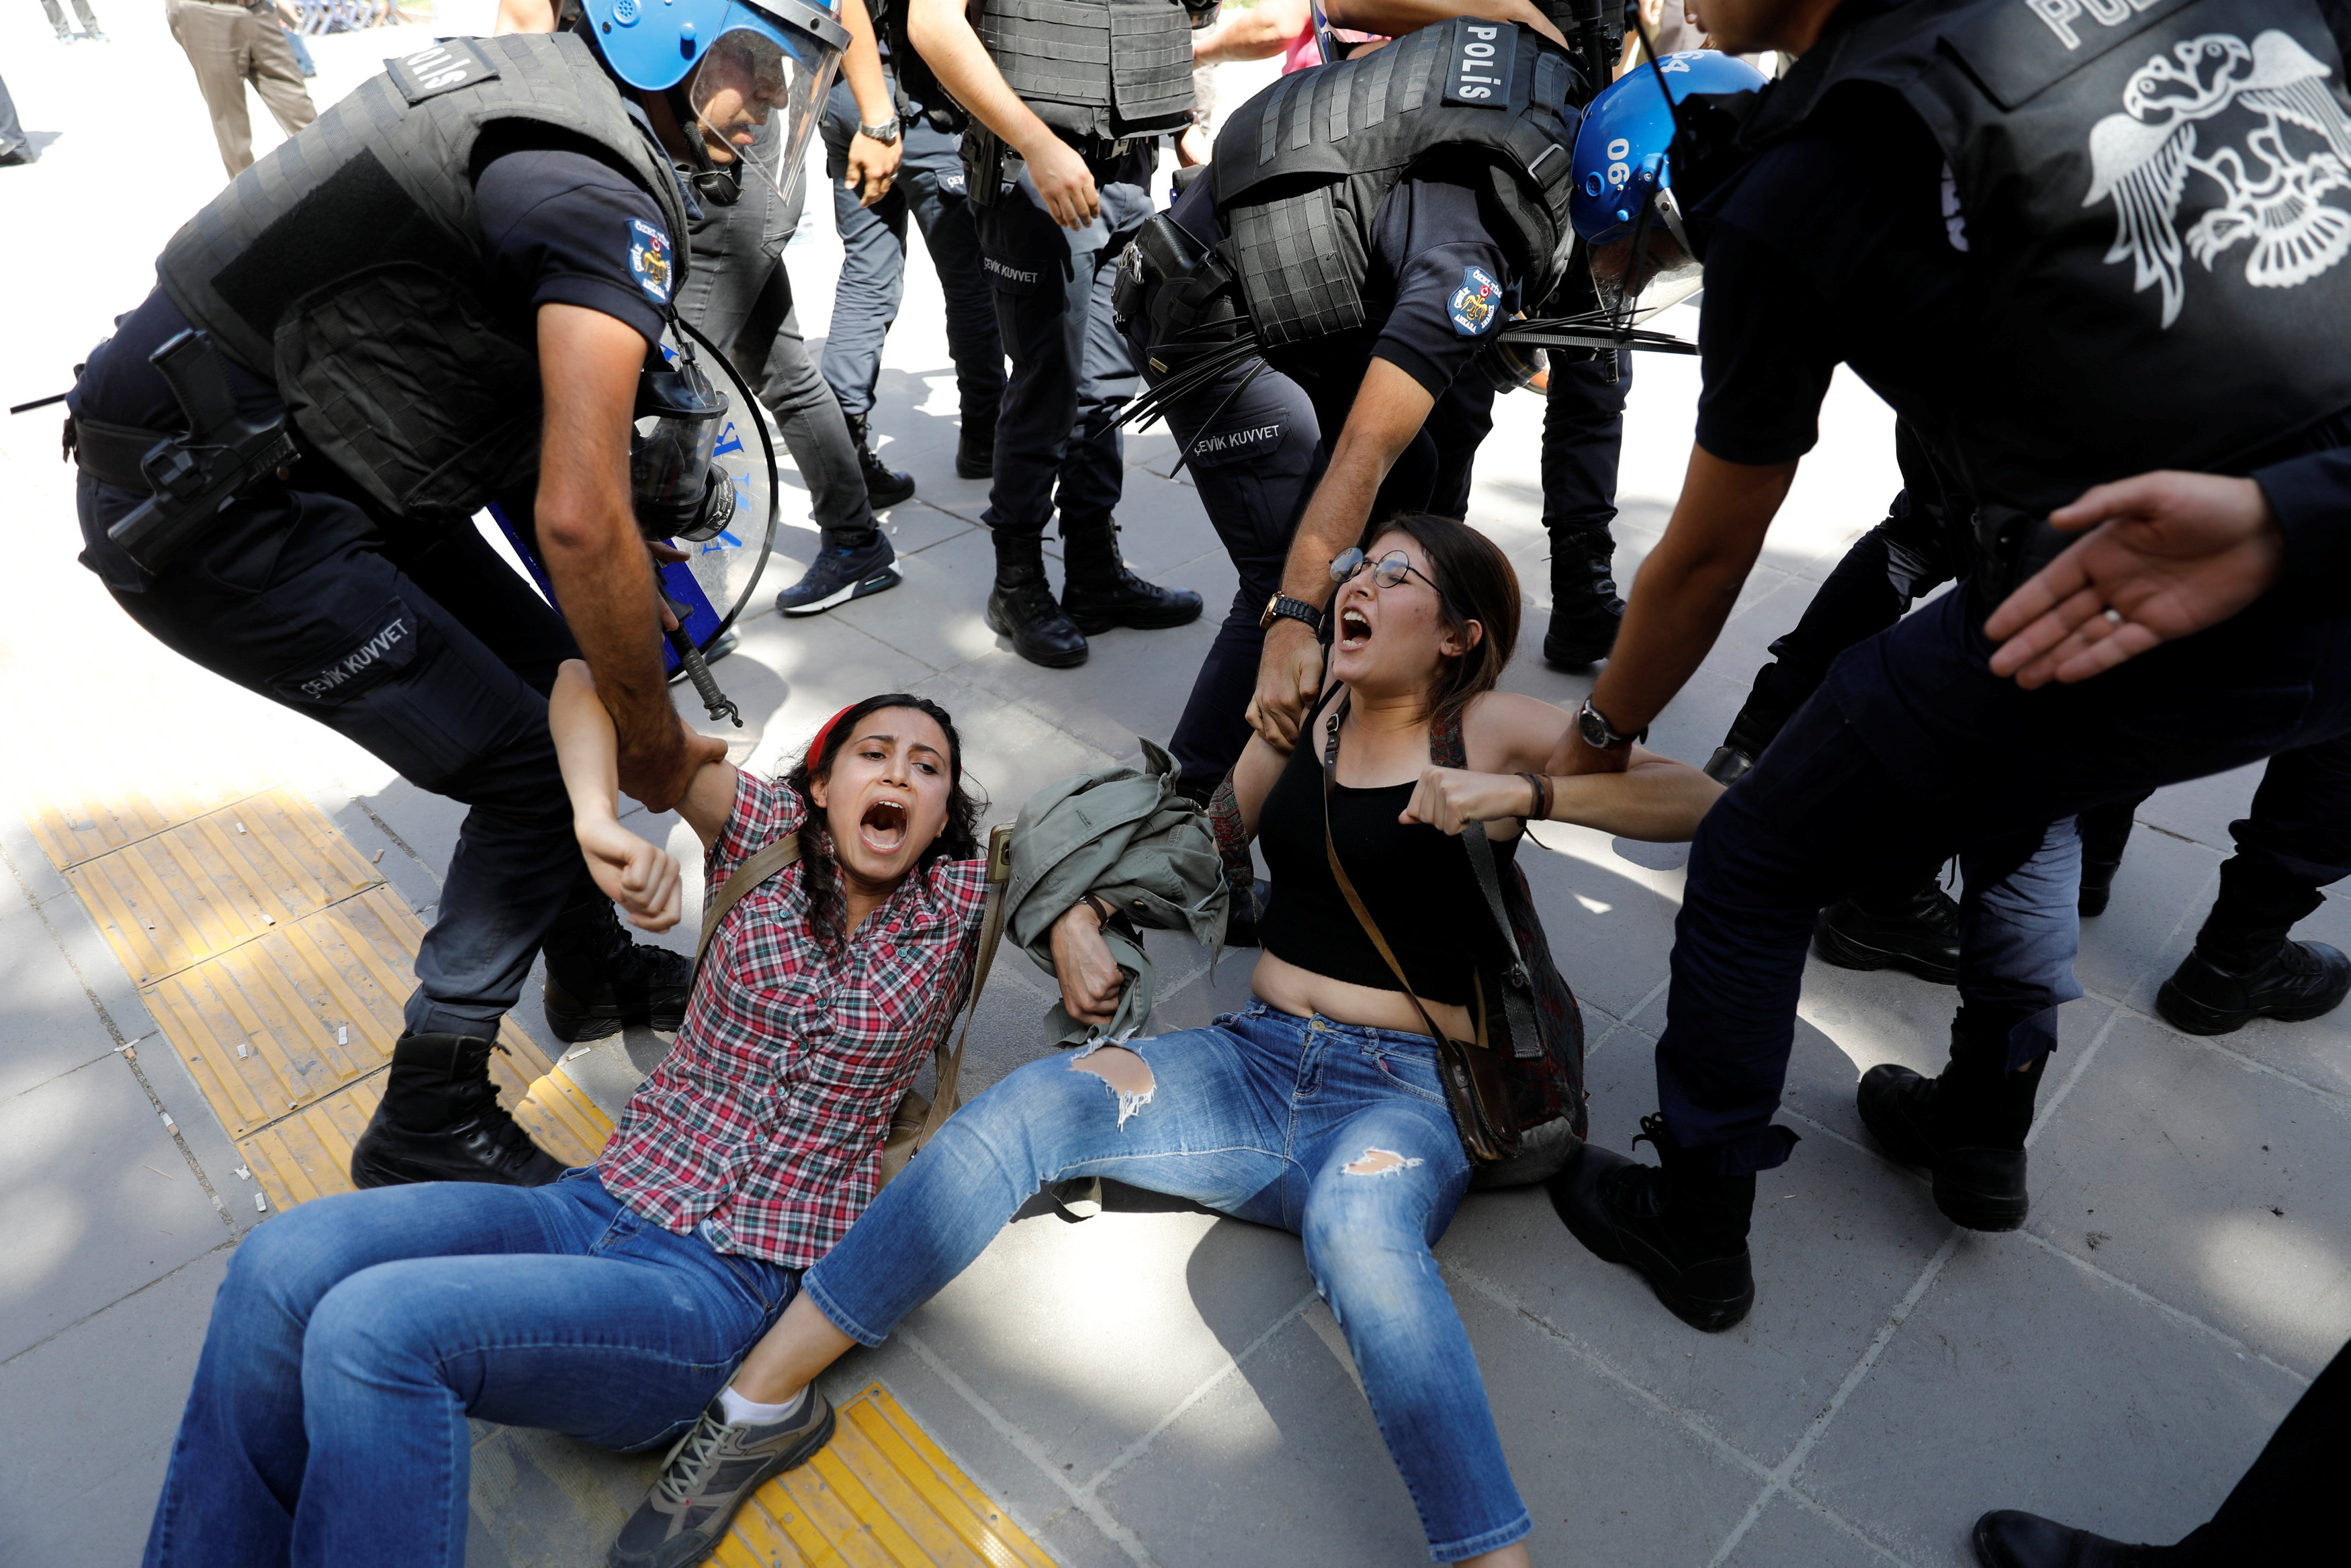 شرطة أردوغان تسحل وتعتقل متظاهرين معارضين أمام محكمة بأنقرة